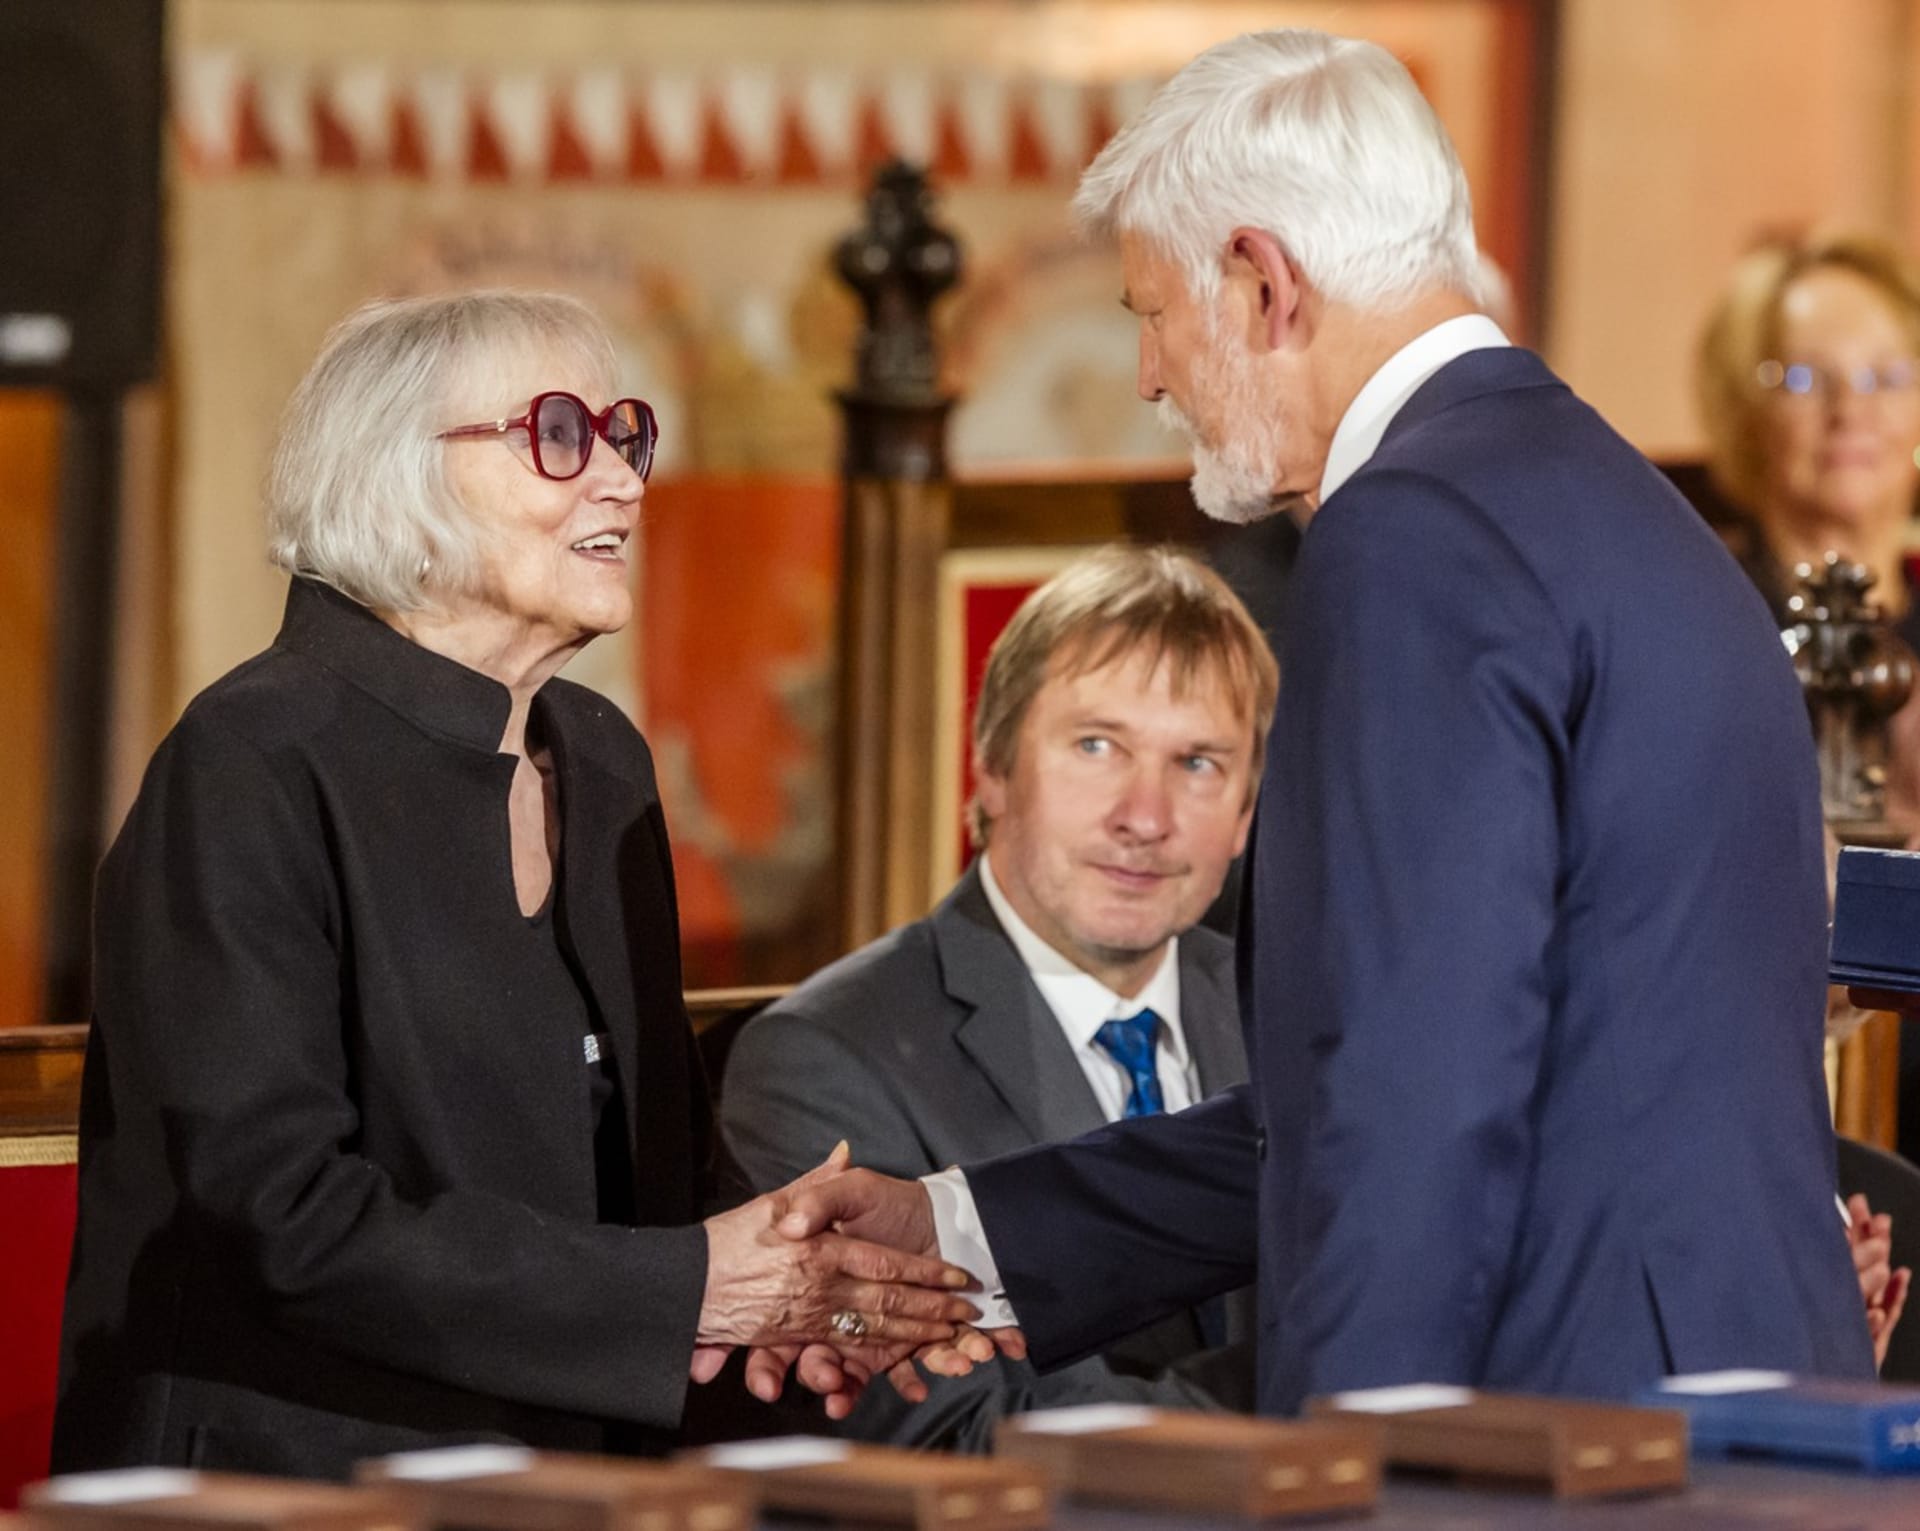 Marta Kubišová letos obdržela státní vyznamenání z rukou prezidenta Petra Pavla 